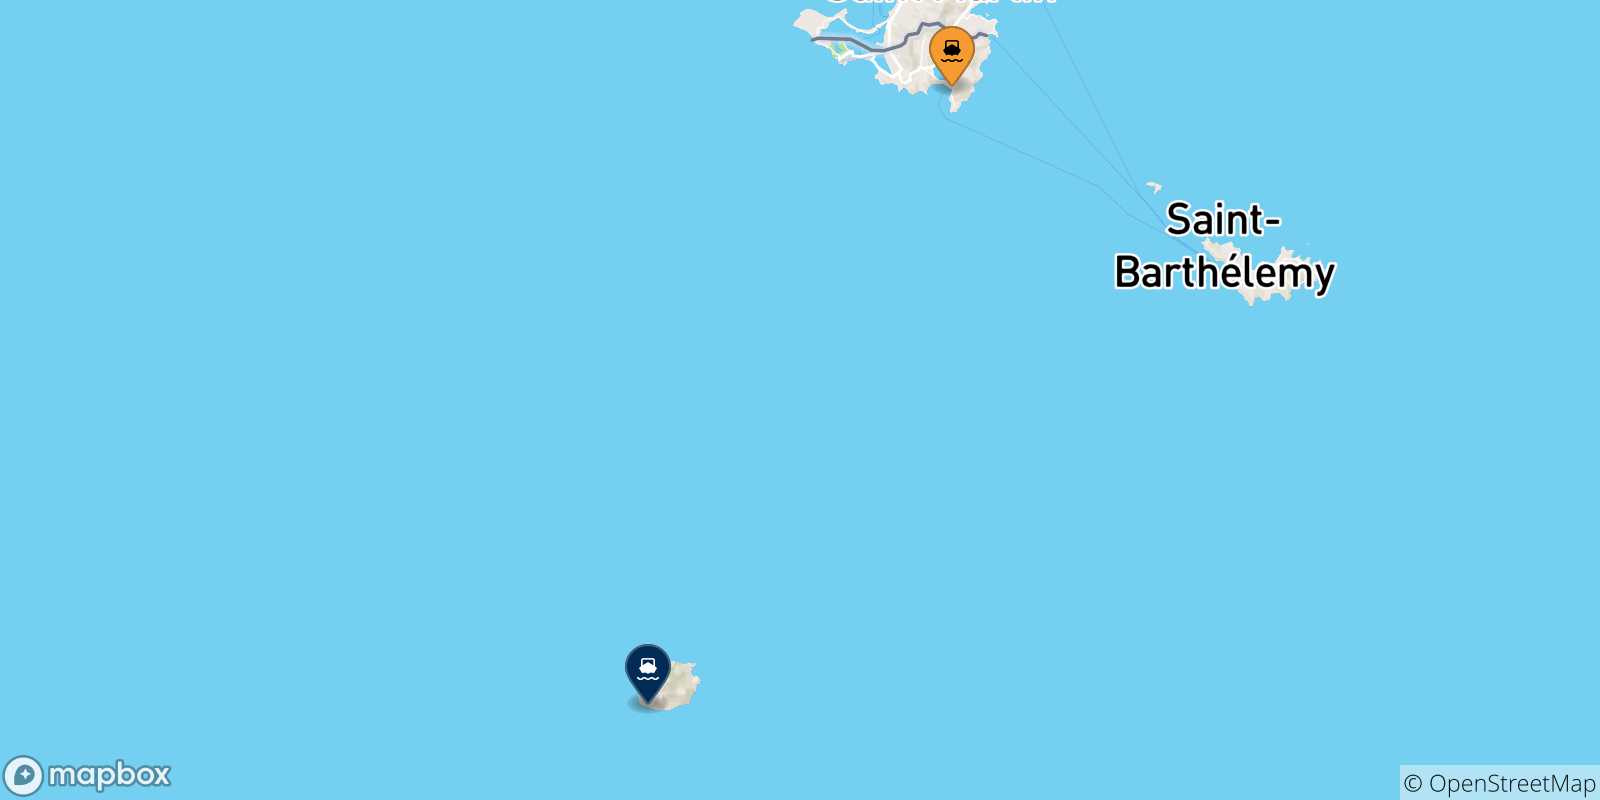 Mappa delle possibili rotte tra Philipsburg (St Maarten) e l'Olanda